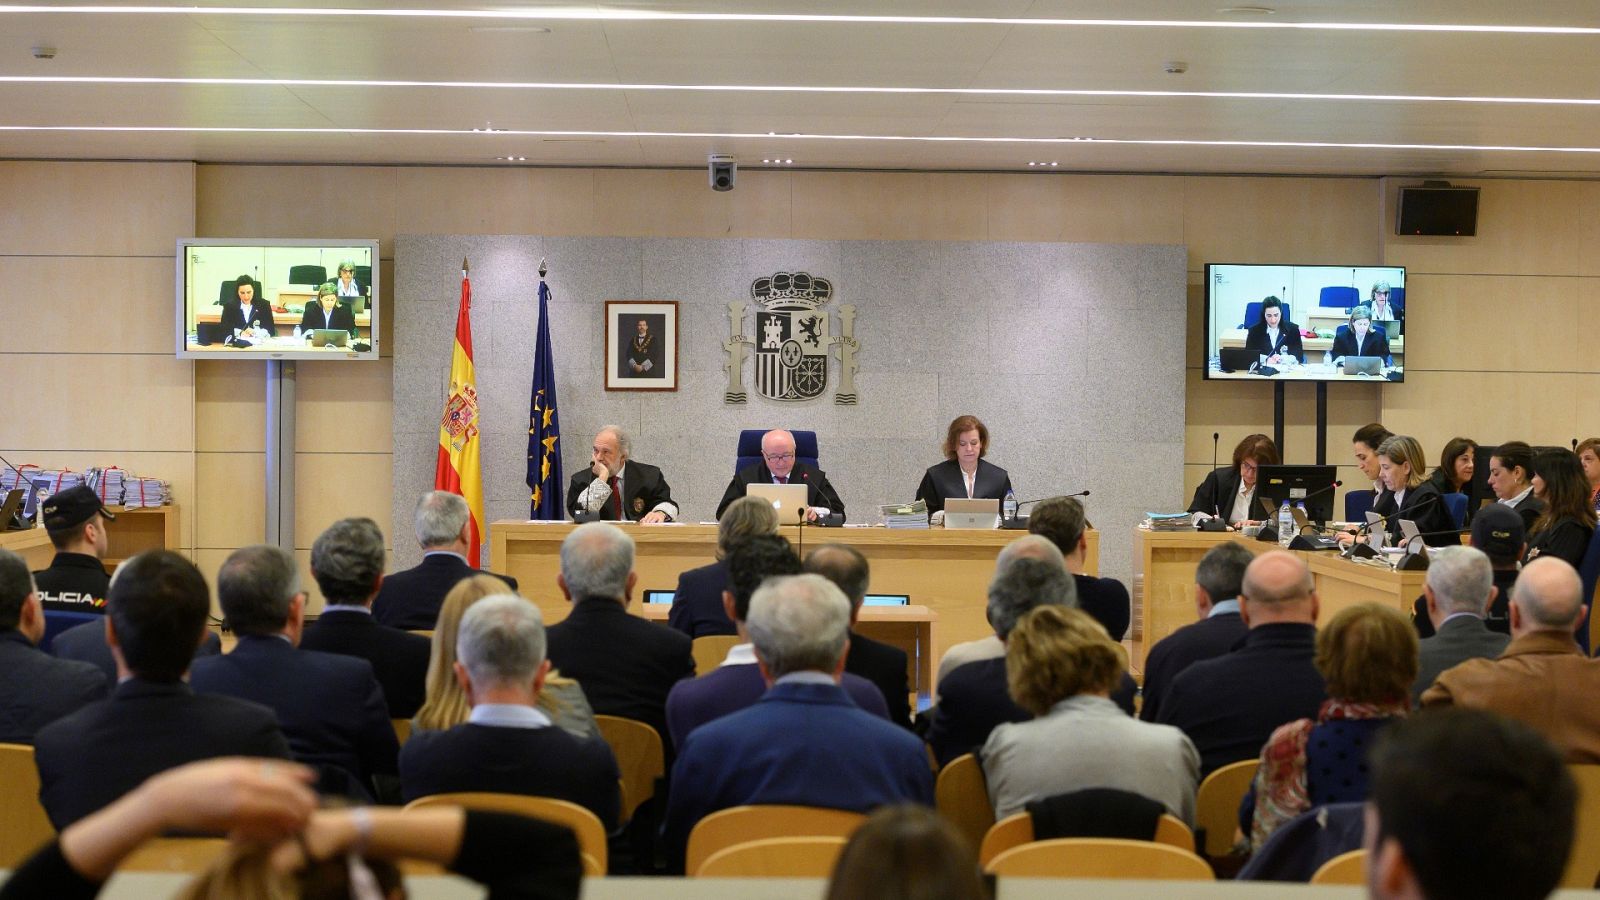 L'Informatiu - Comunitat Valenciana - 09/03/20 - RTVE.es